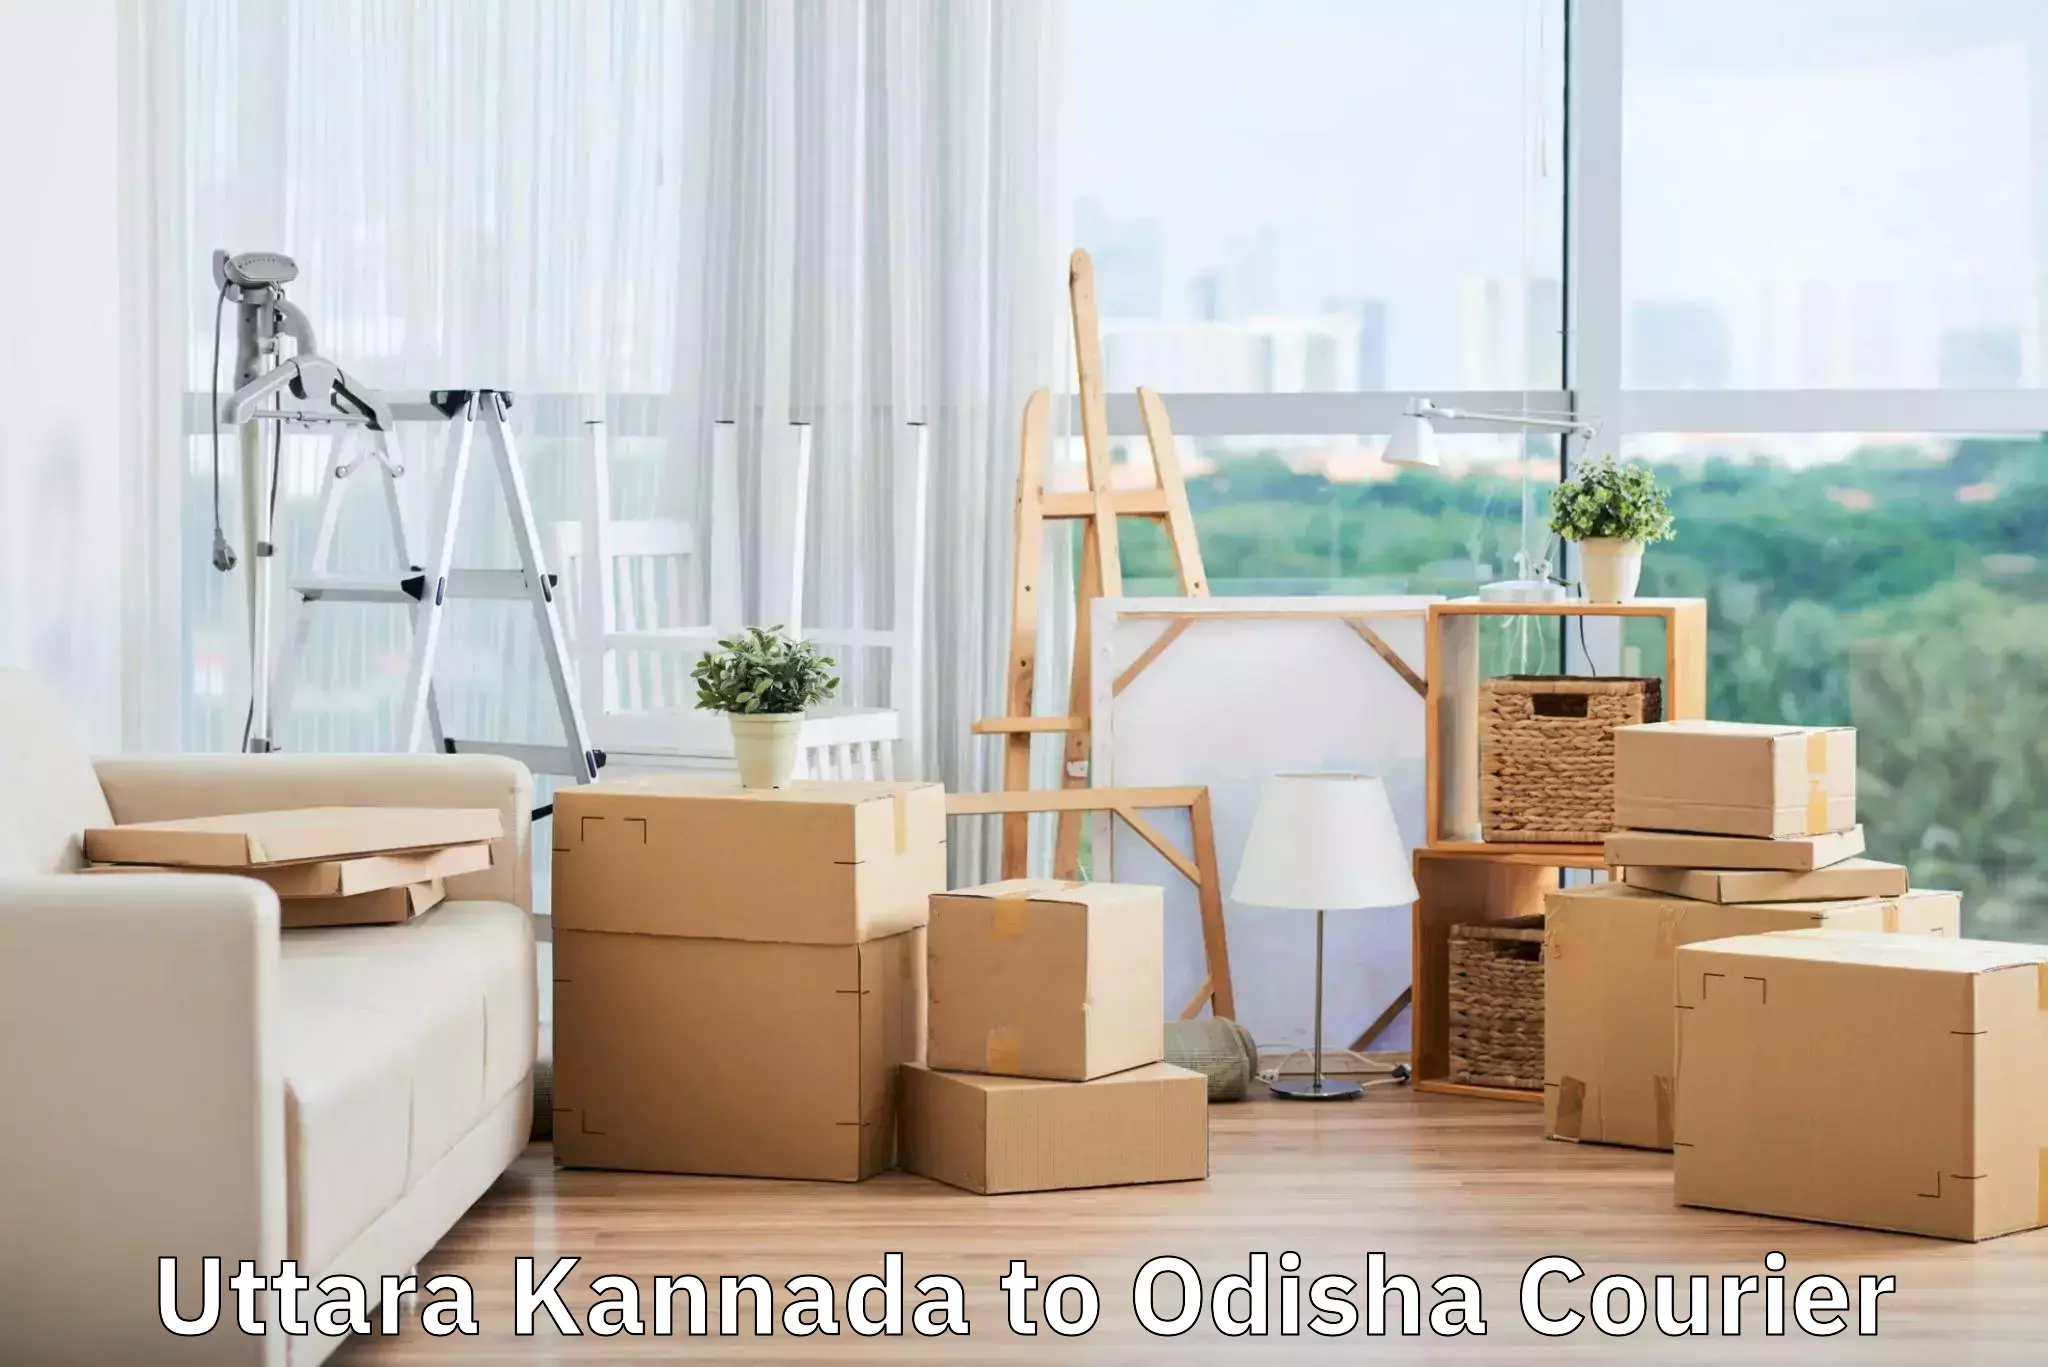 Luggage transfer service Uttara Kannada to Mohana